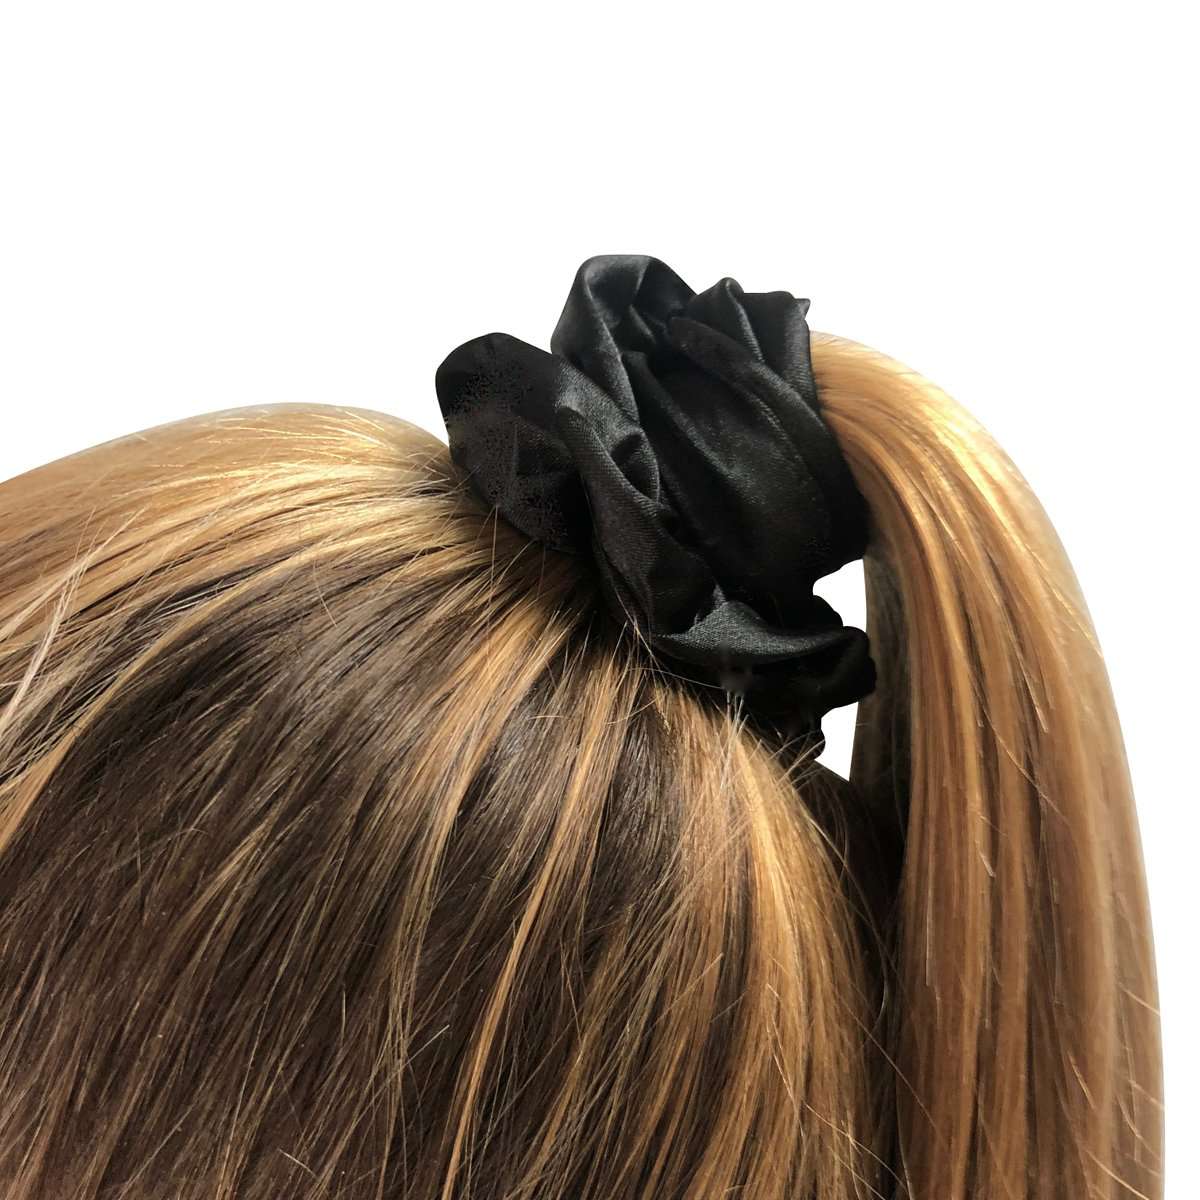 Hair Scrunchies Multipack Set - Black, Beige & Animal Print